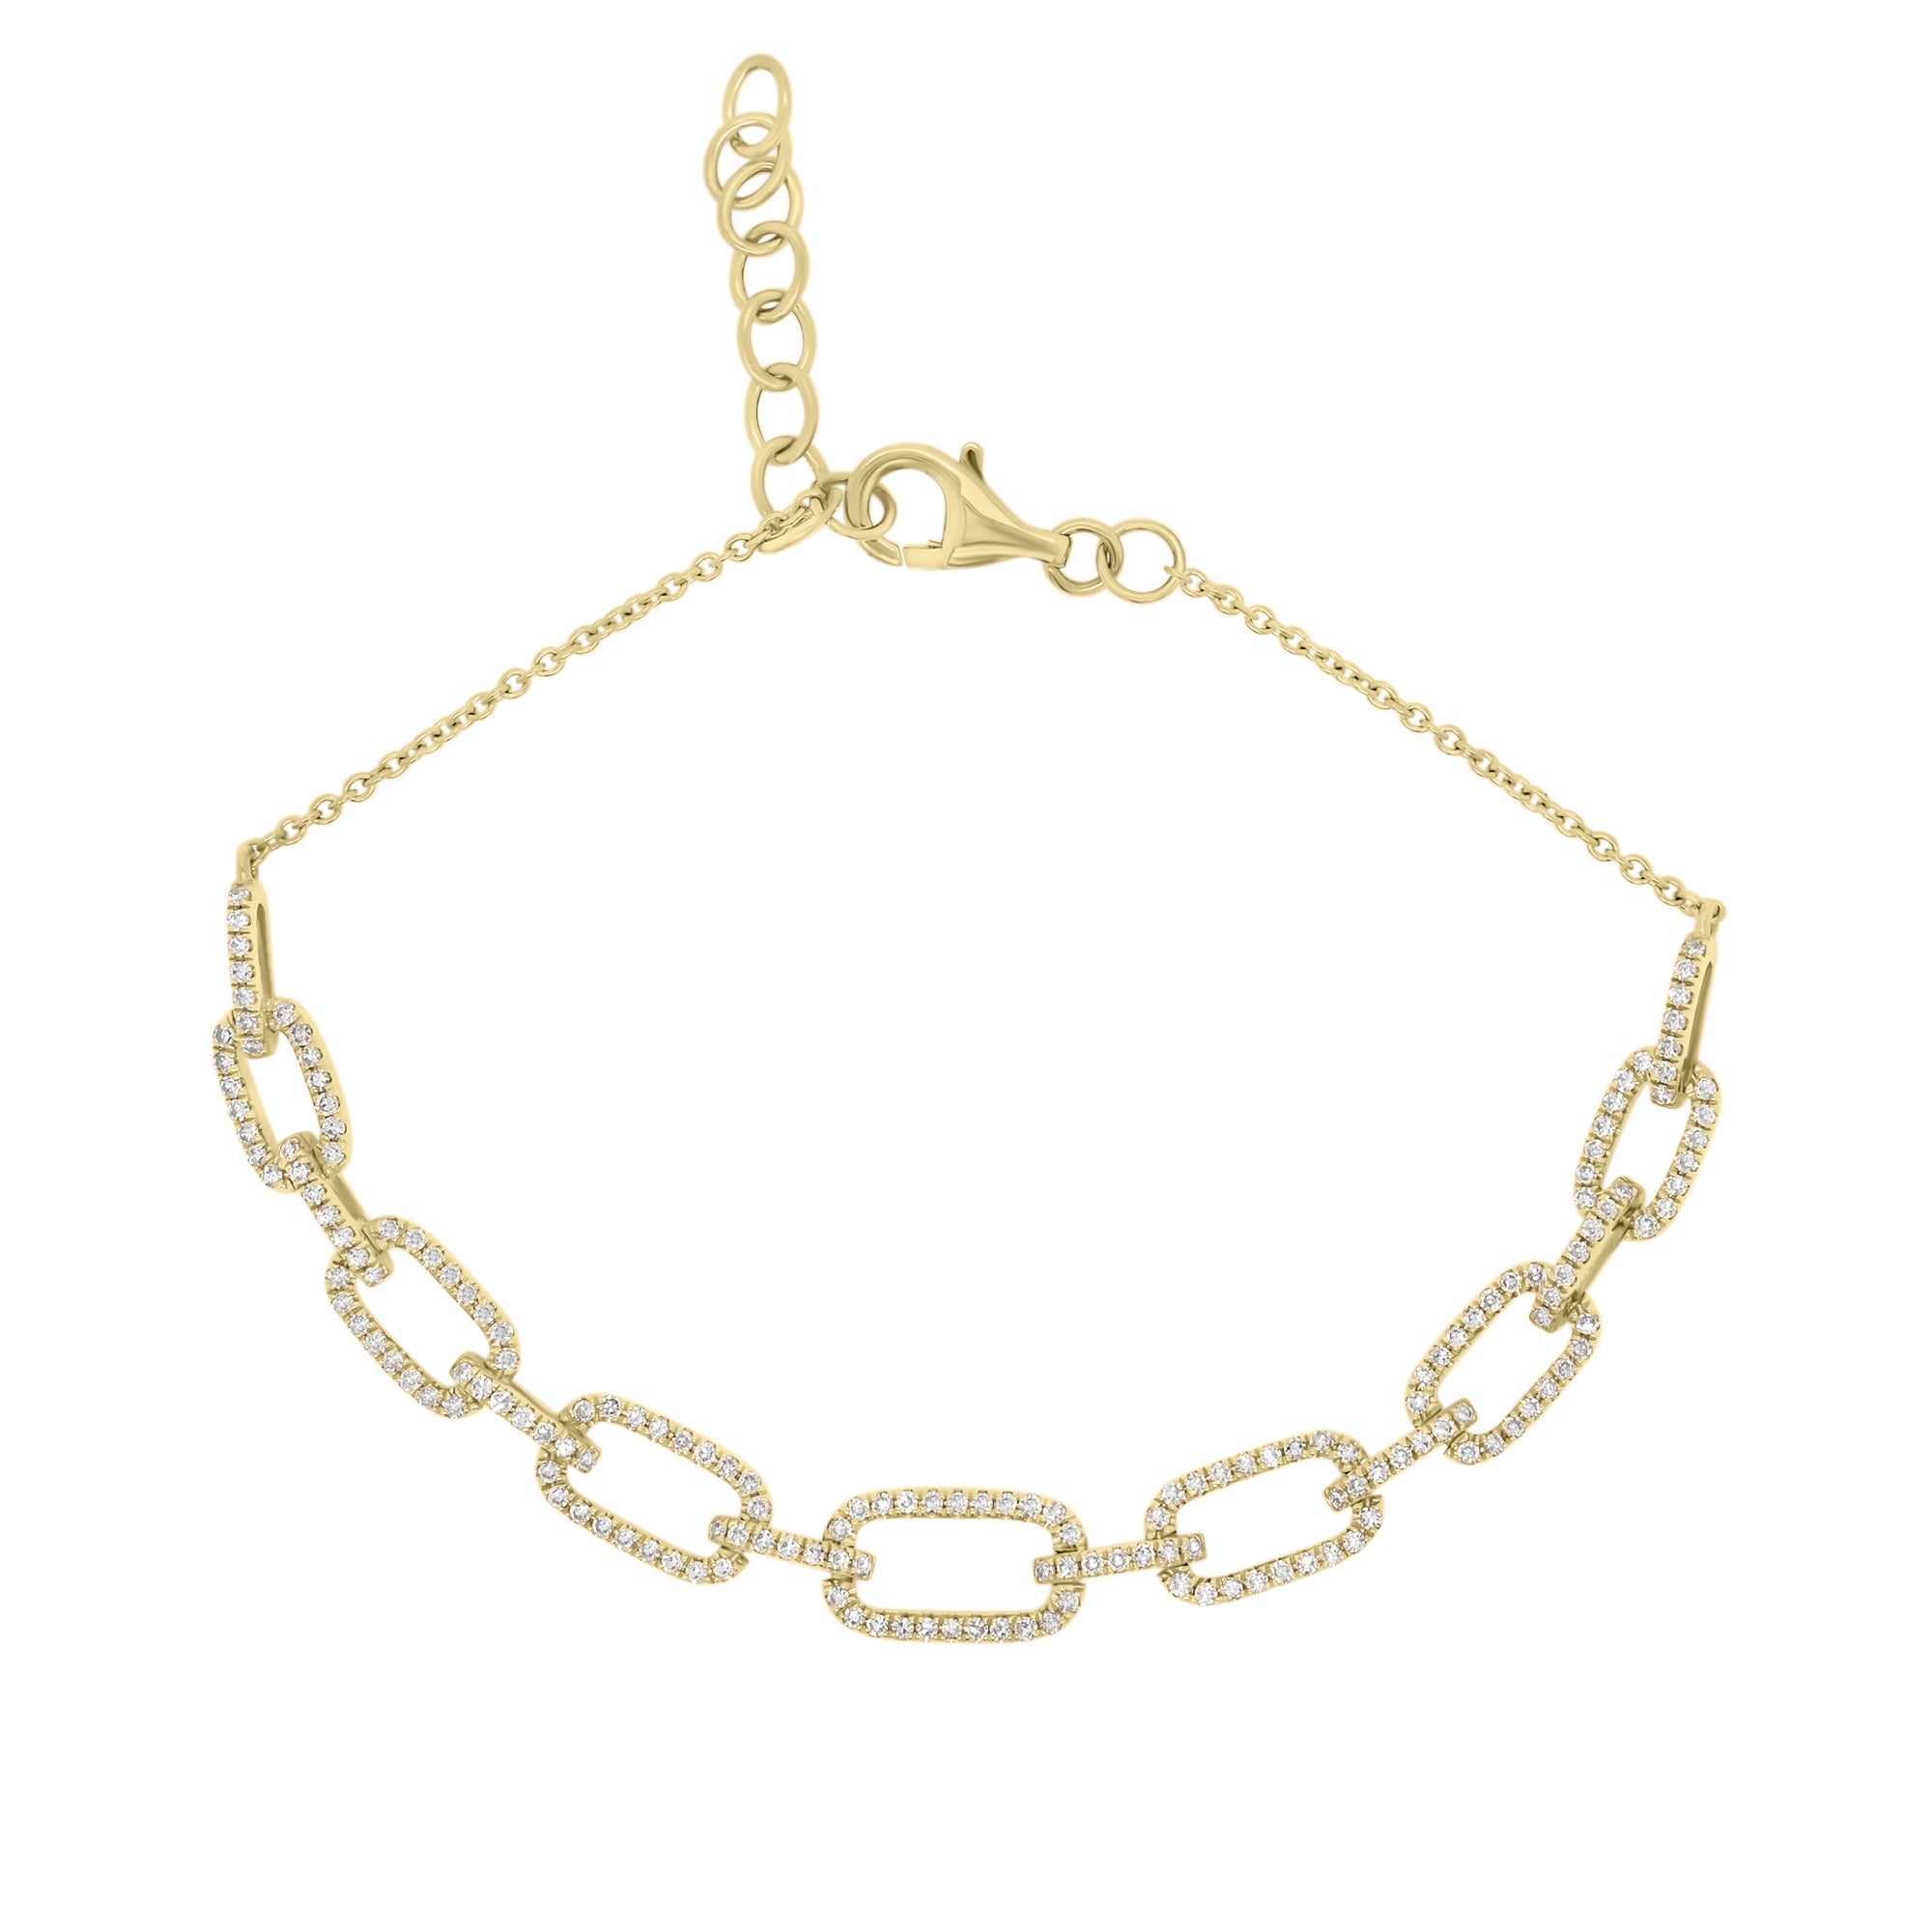 Diamond Rectangular Link Fashion Bracelet - 14K yellow gold weighing 4.44 grams - 174 round diamonds totaling 0.63 carats